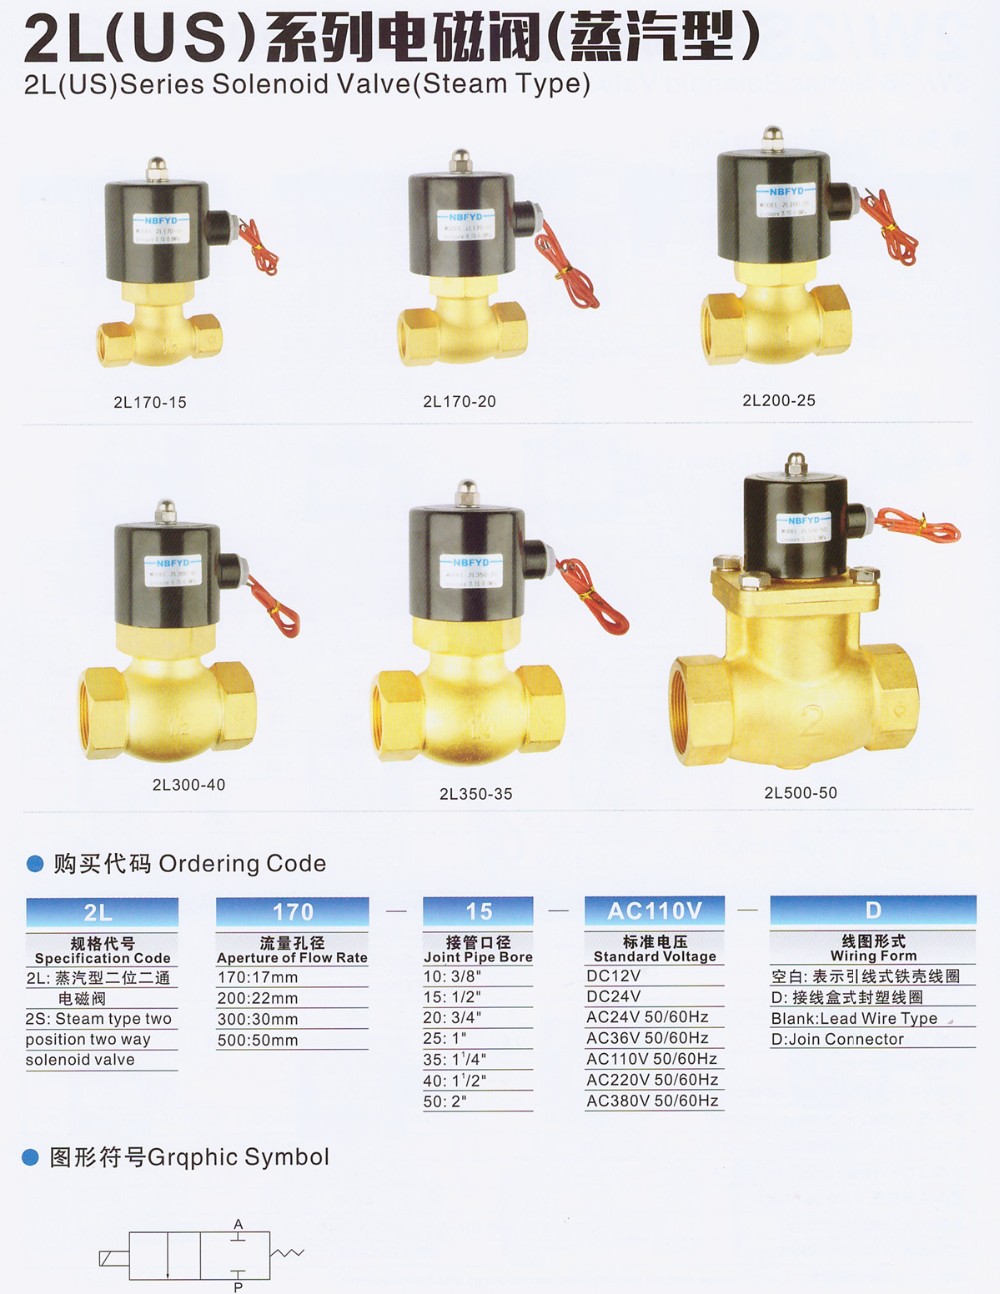 2 way brass water stop solenoid valve PU220-08